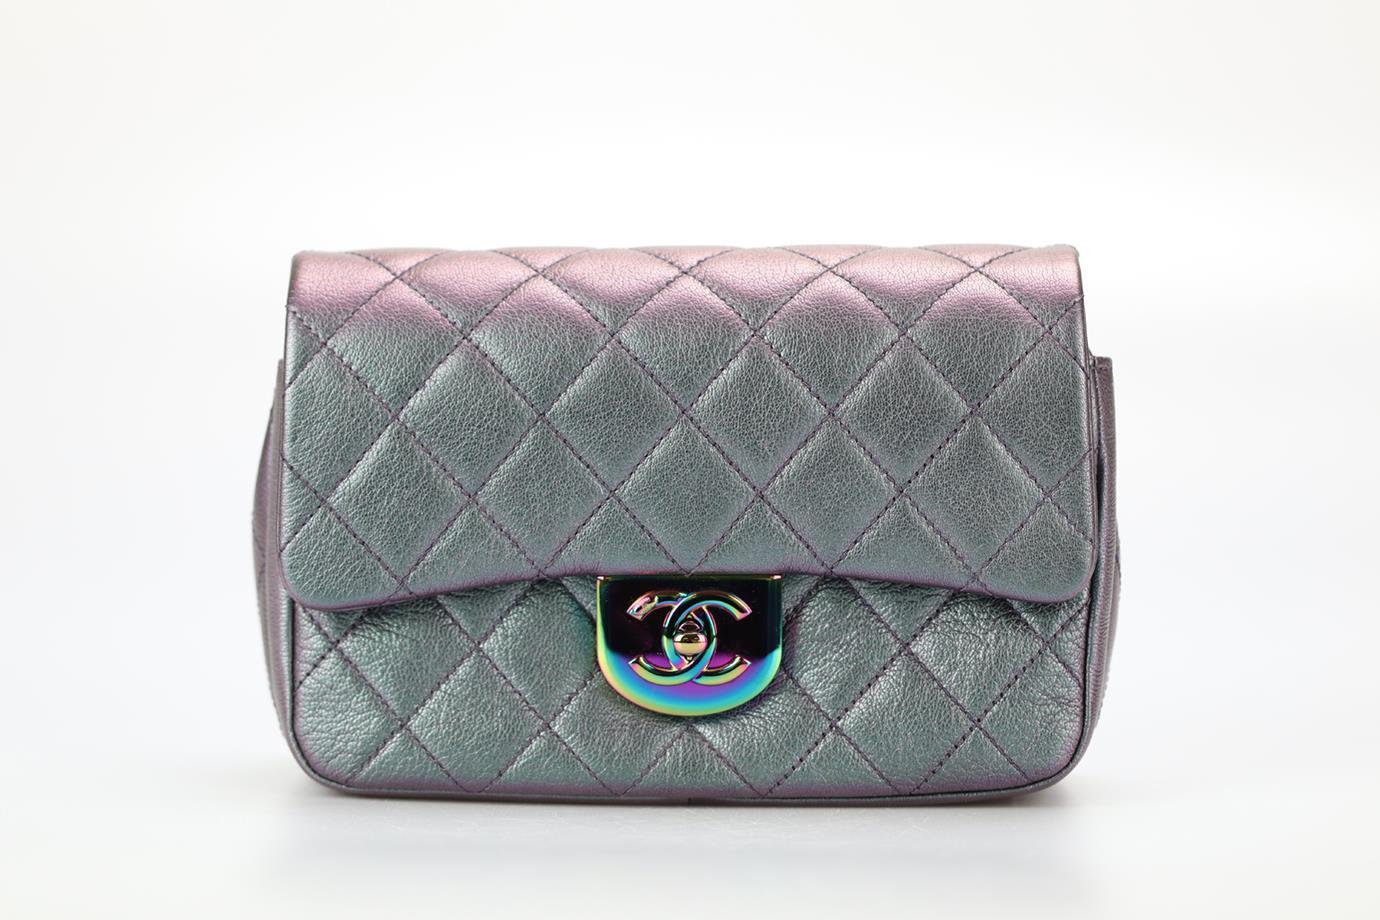 Chanel 2016 Double Carry Waist Chain Flap Small Irisdescent Quilted Leather Crossbody Bag. Grün und lila. Drehriegelverschluss - Vorderseite. Kommt mit - Echtheitskarte und Staubbeutel. Höhe: 5,8 Zoll. Breite: 9 Zoll. Tiefe: 3 Zoll. Riemenfall: 20